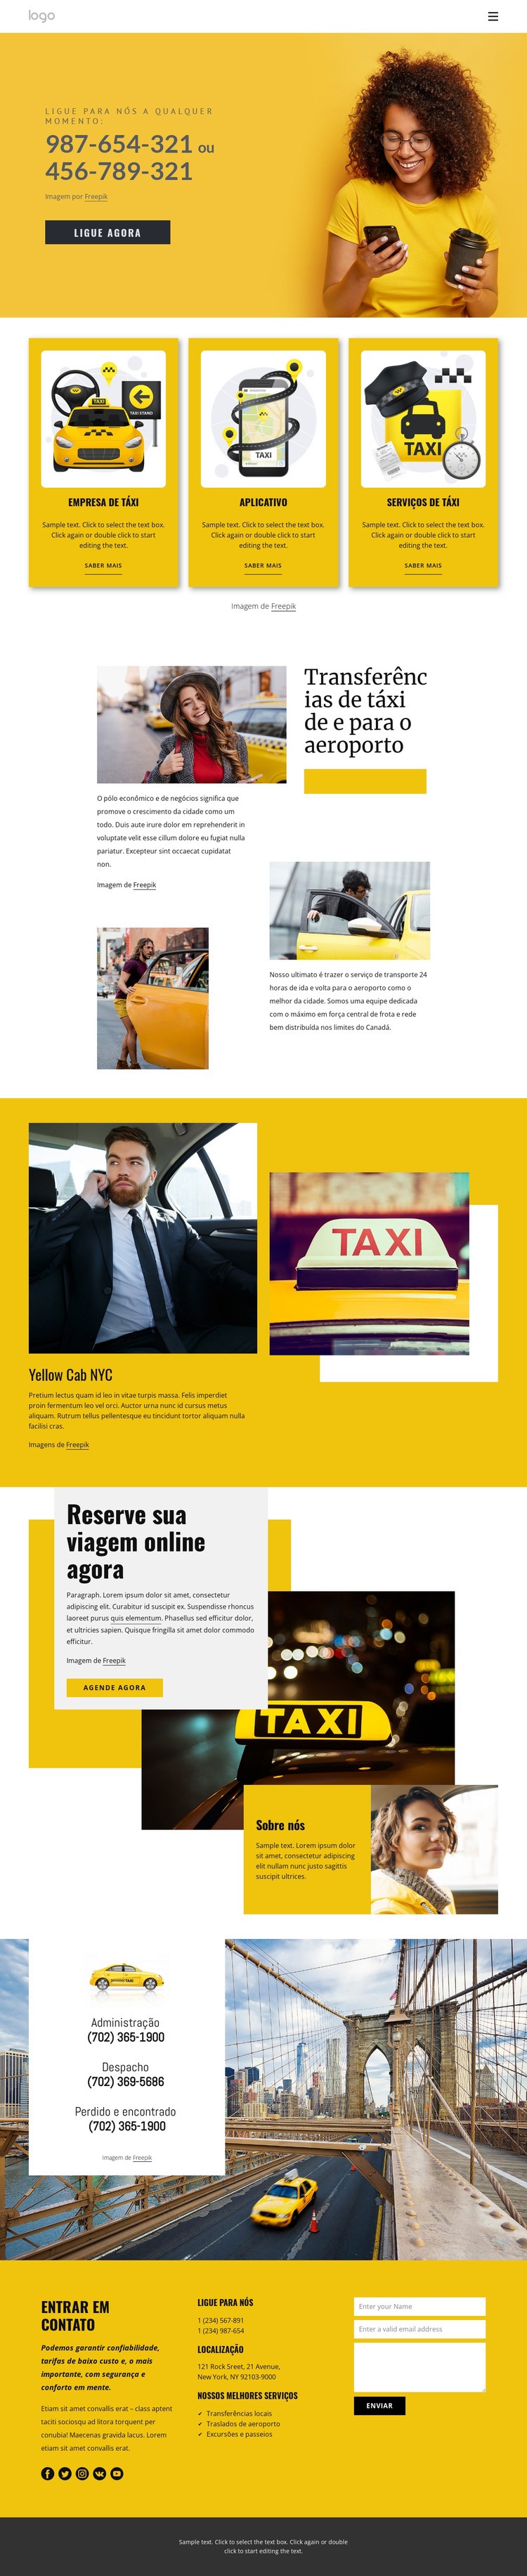 Serviço de táxi de qualidade Design do site